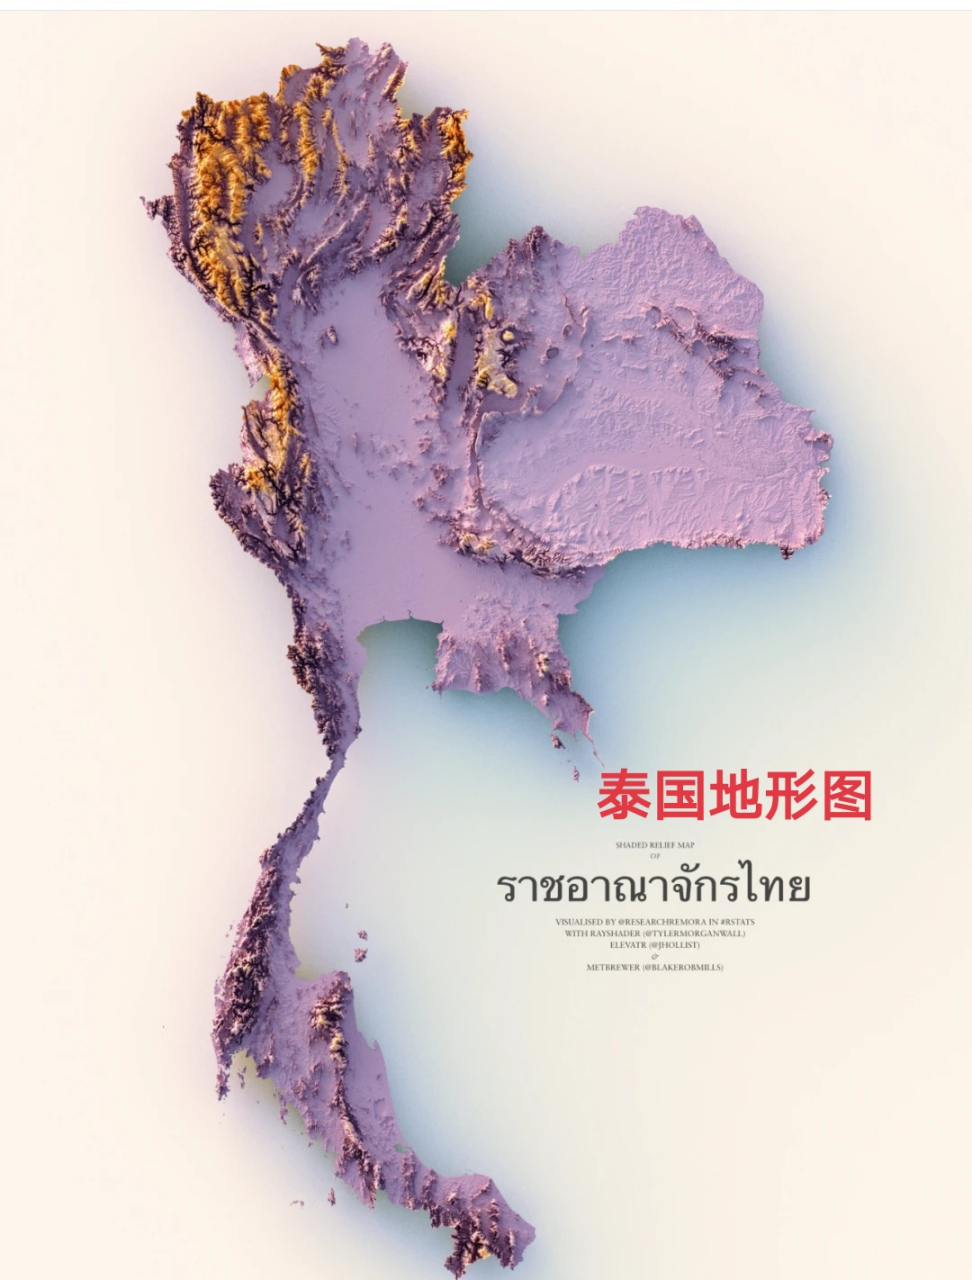 泰国地形图简图图片